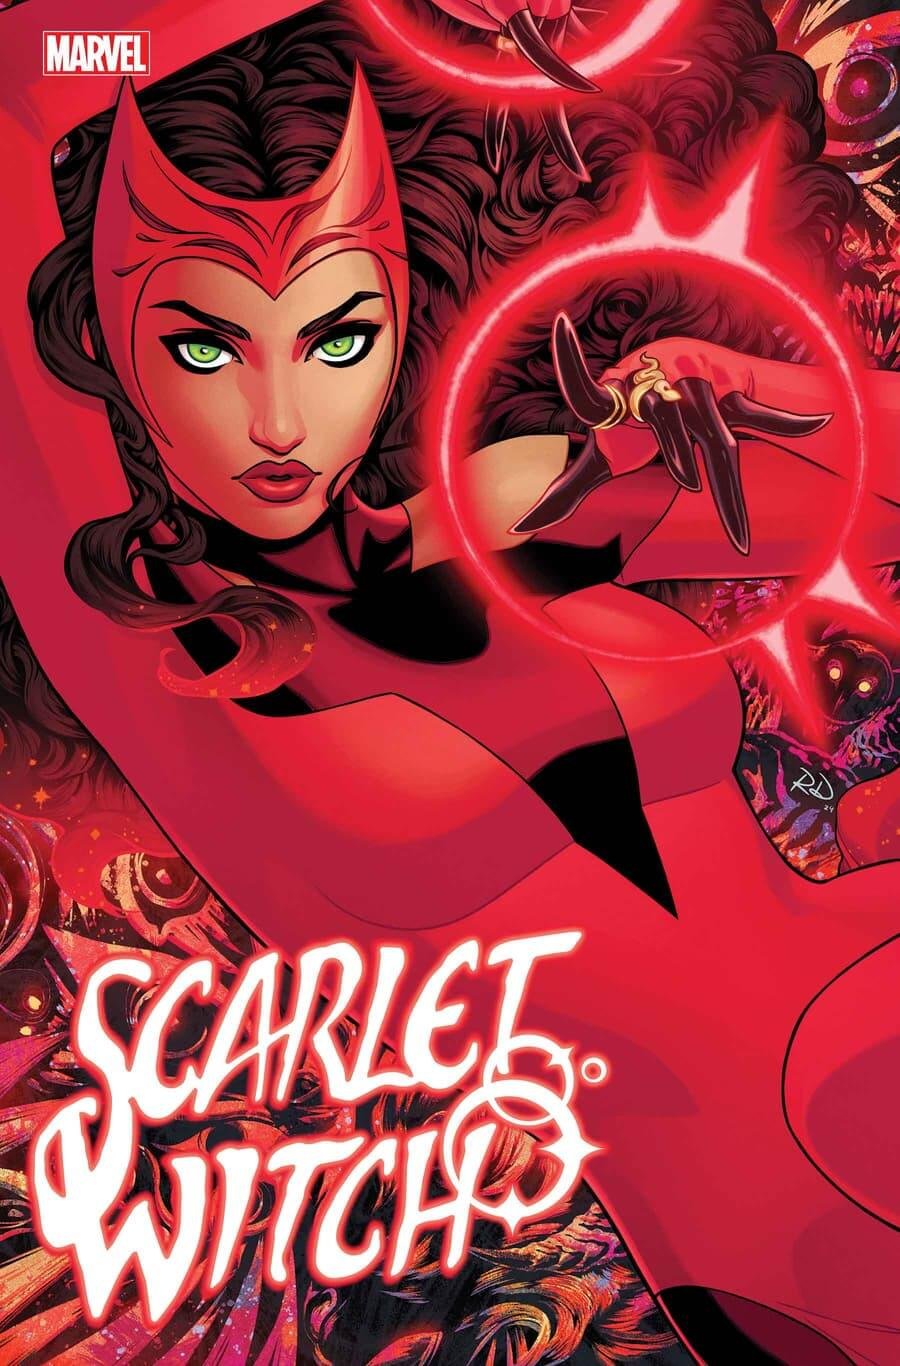 Couverture de Scarlet Witch 1 par Russell Dauterman